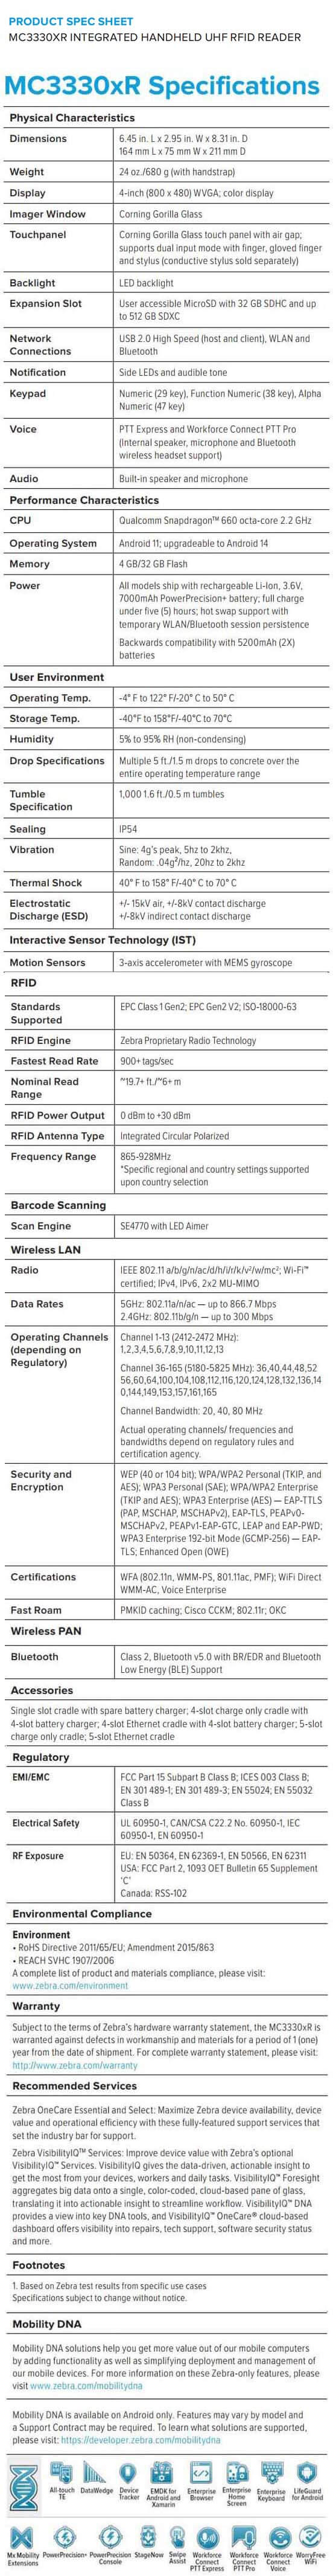 Zebra MC3330xR UHF RFID Redader